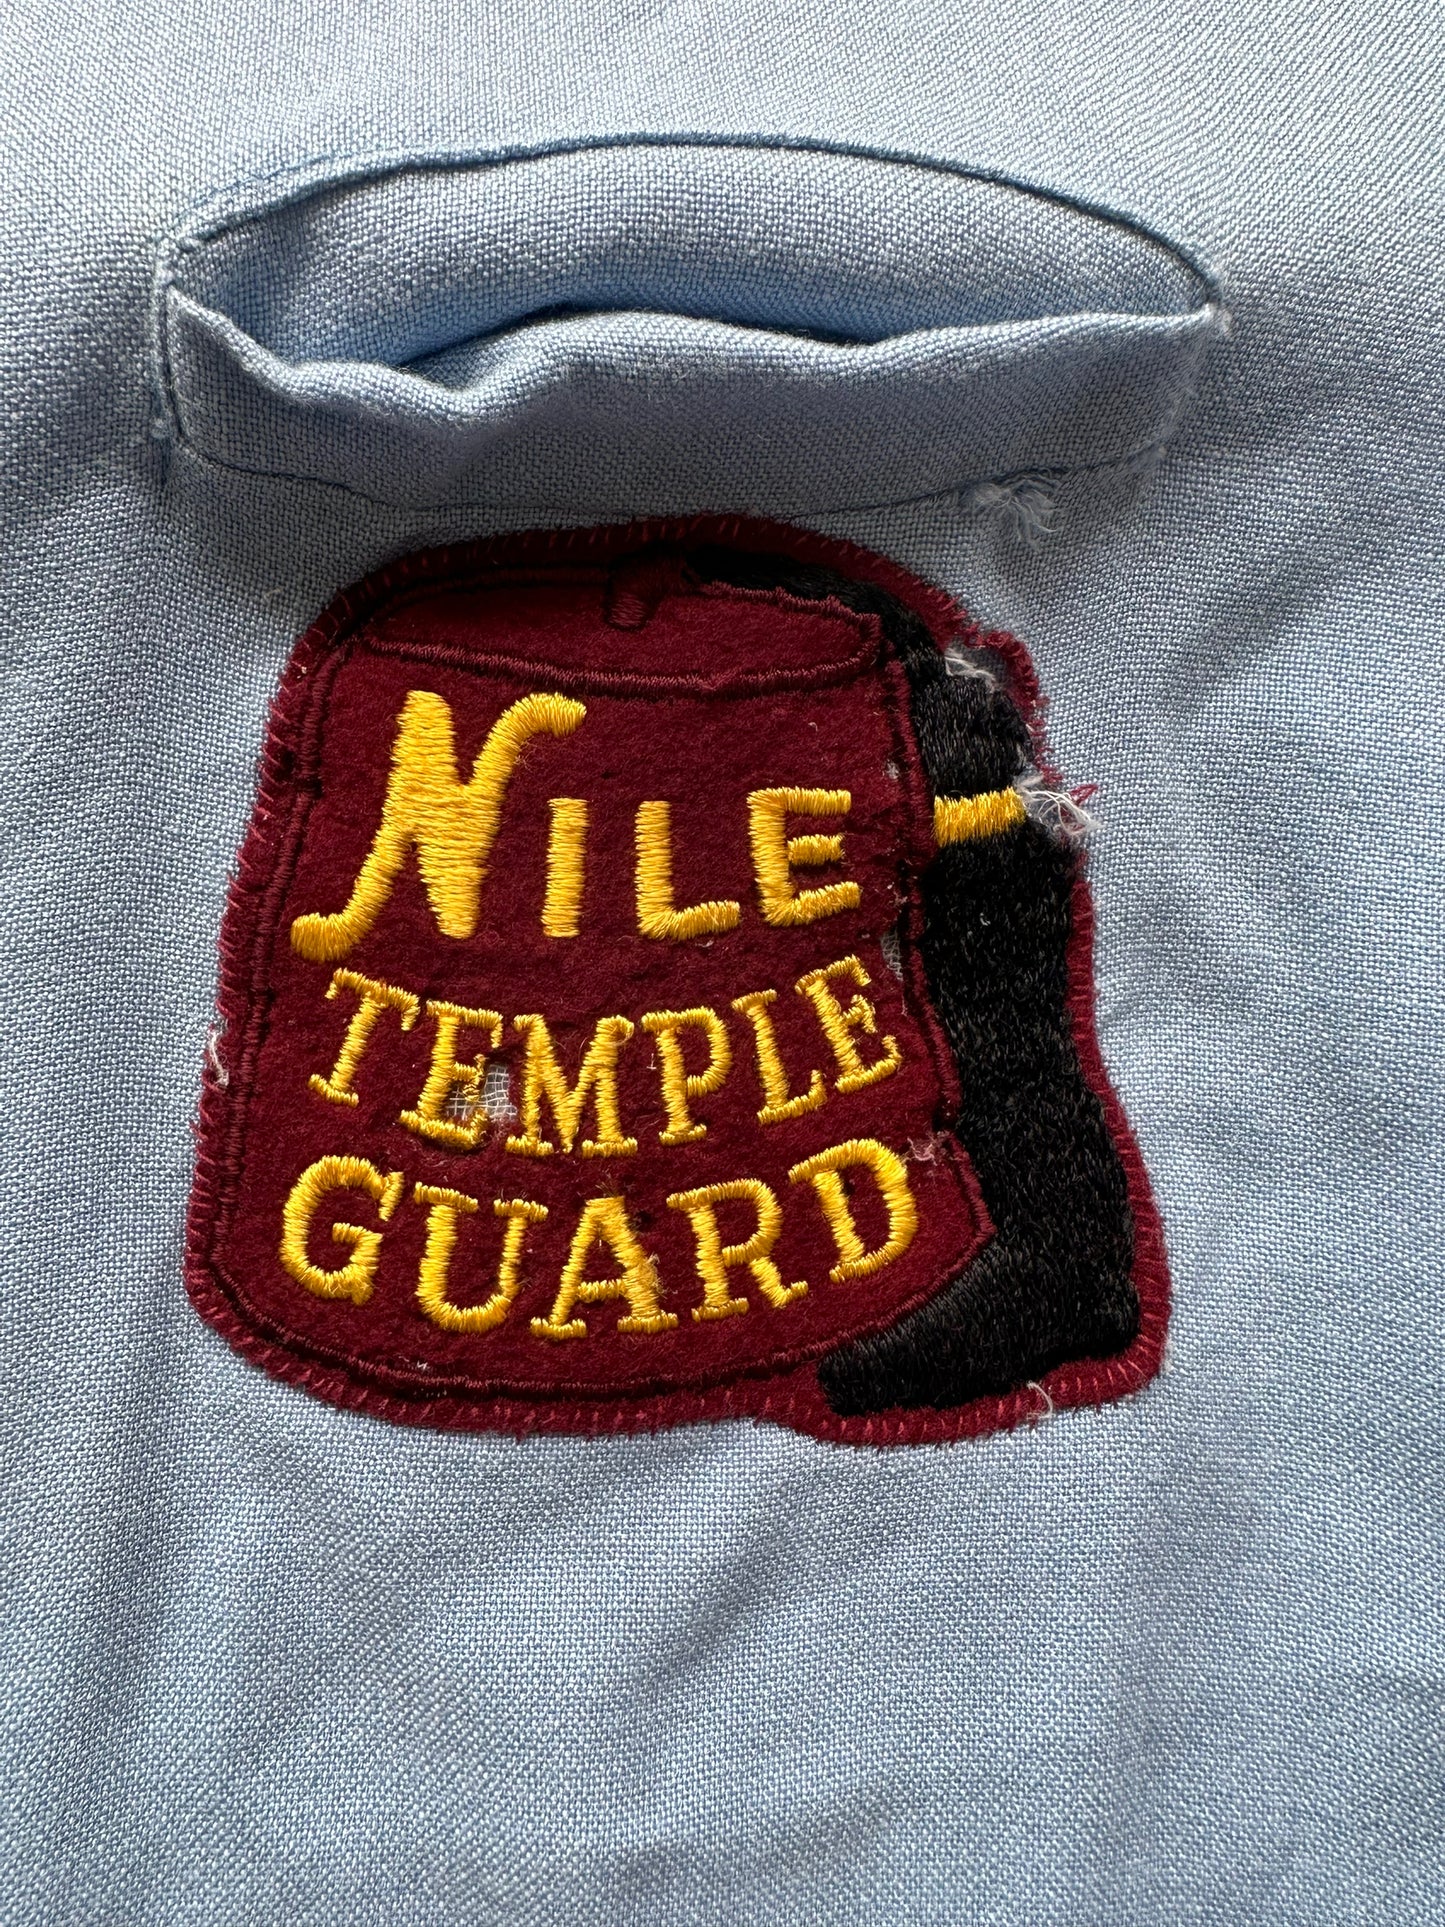 Front damaged patch Vintage "Nile Temple Guard" Chainstitched Bowling Shirt SZ L | Vintage Bowling Shirt Seattle | Barn Owl Vintage Seattle